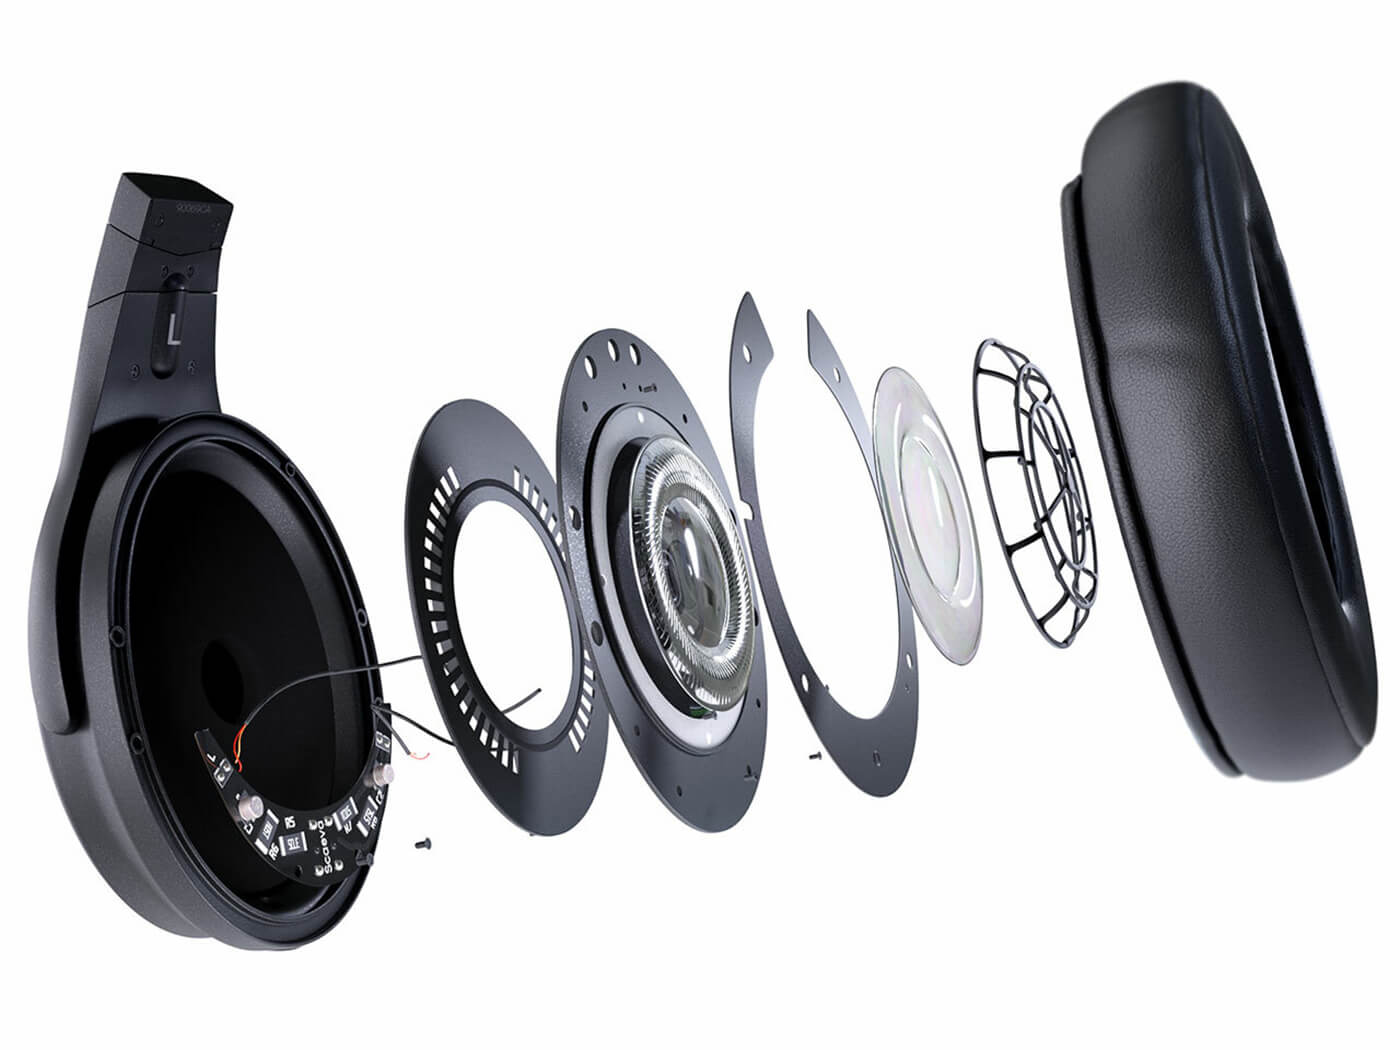 Steven Slate Audio VSX 2.0 Headphone System